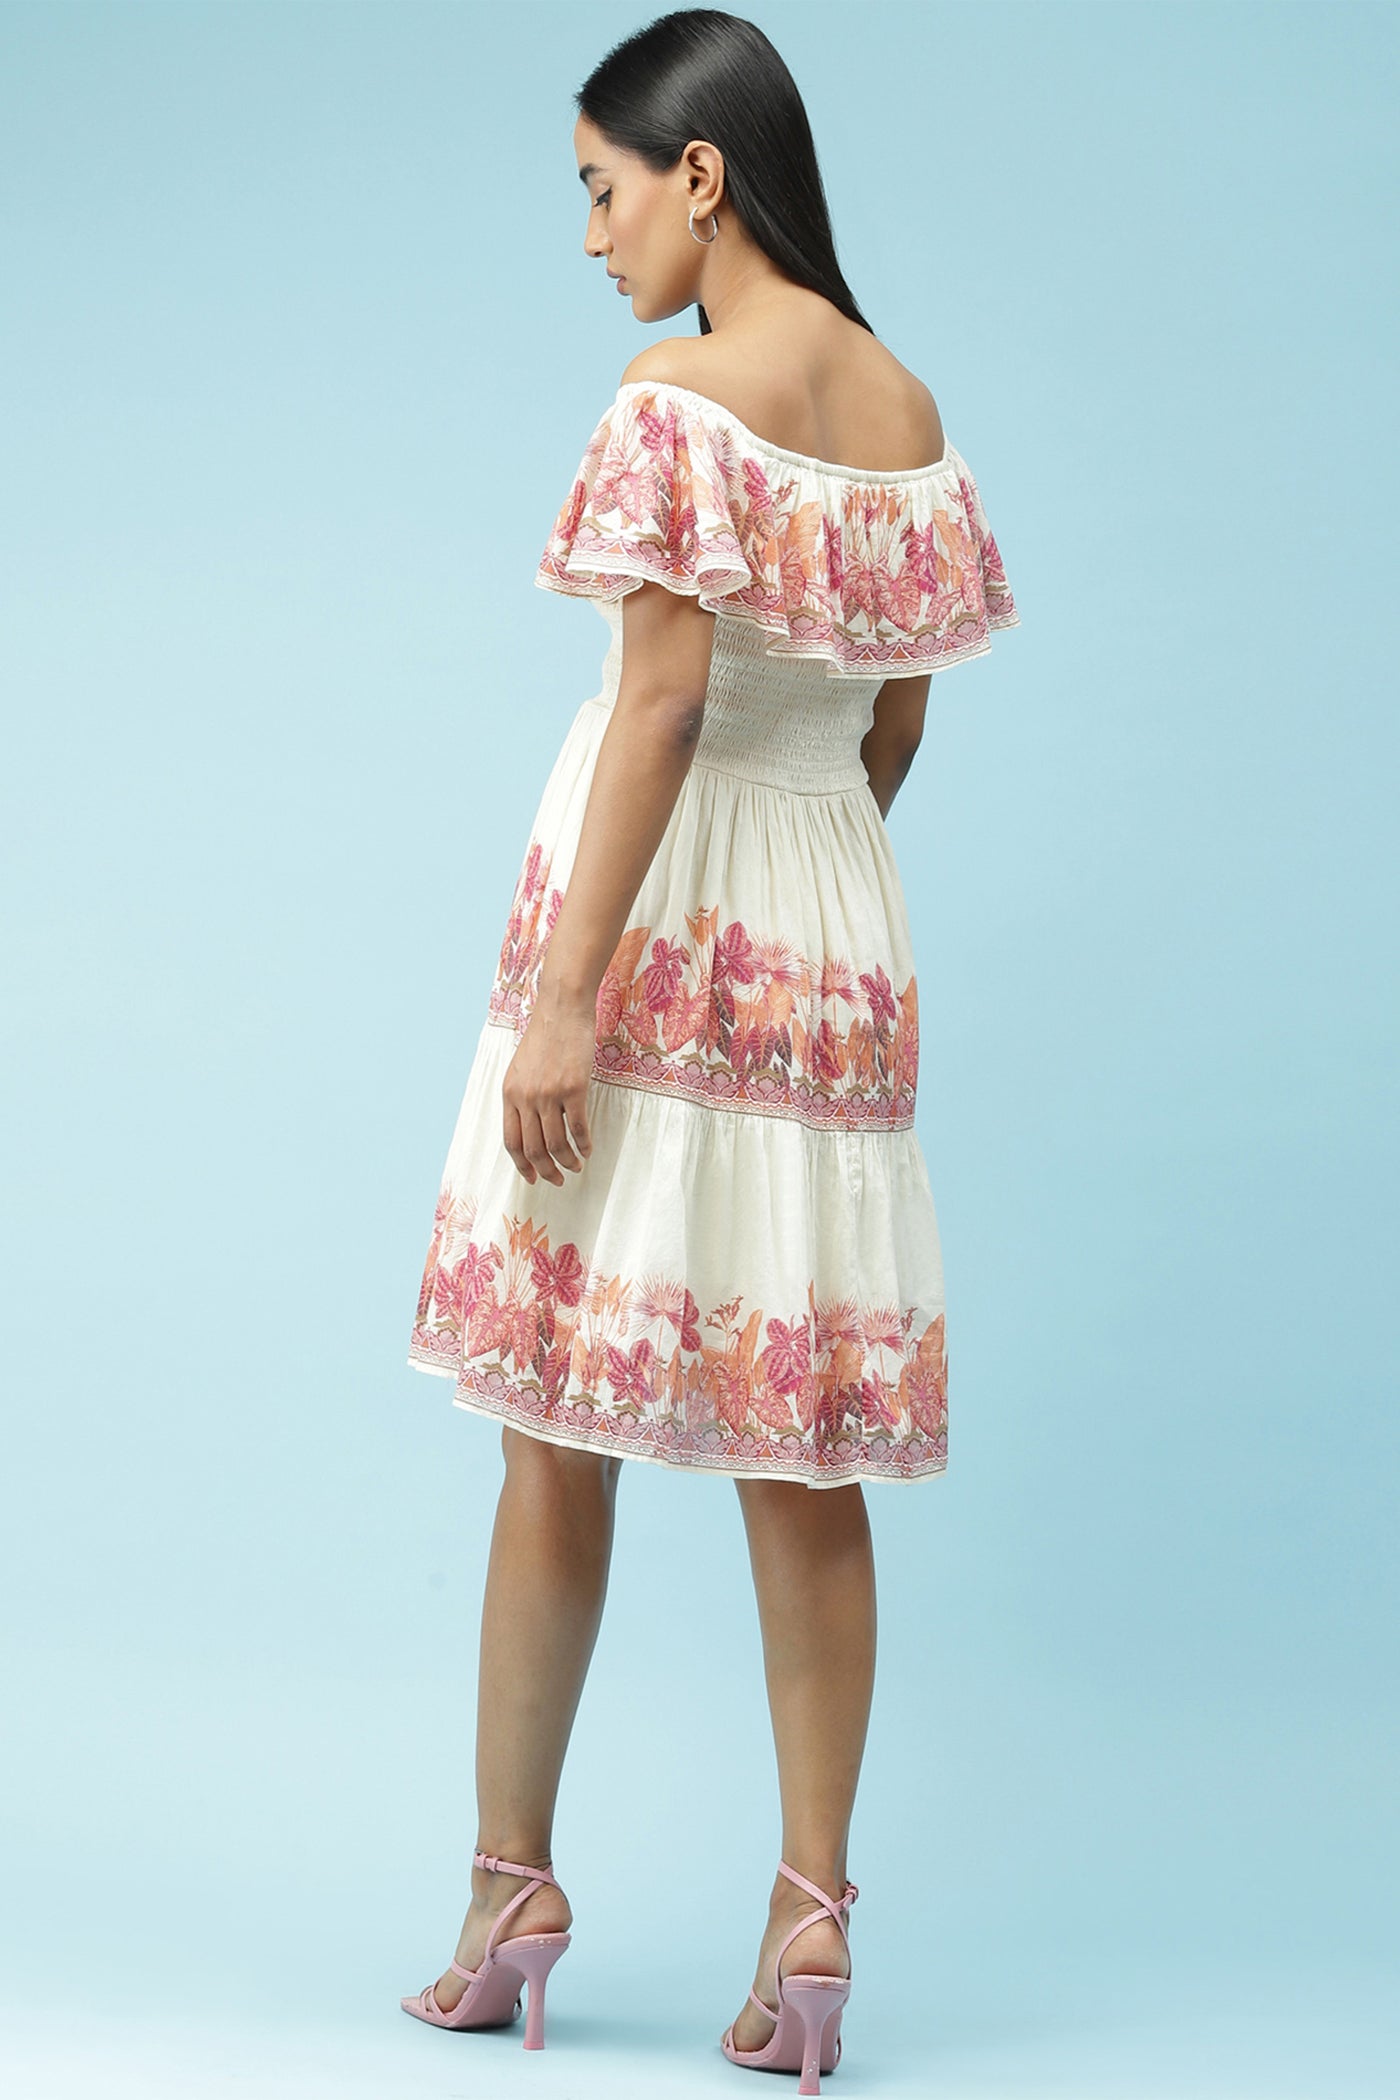 label ritu kumar Pink Off Shoulder Printed Short Dress western  designer wear online shopping melange singapore